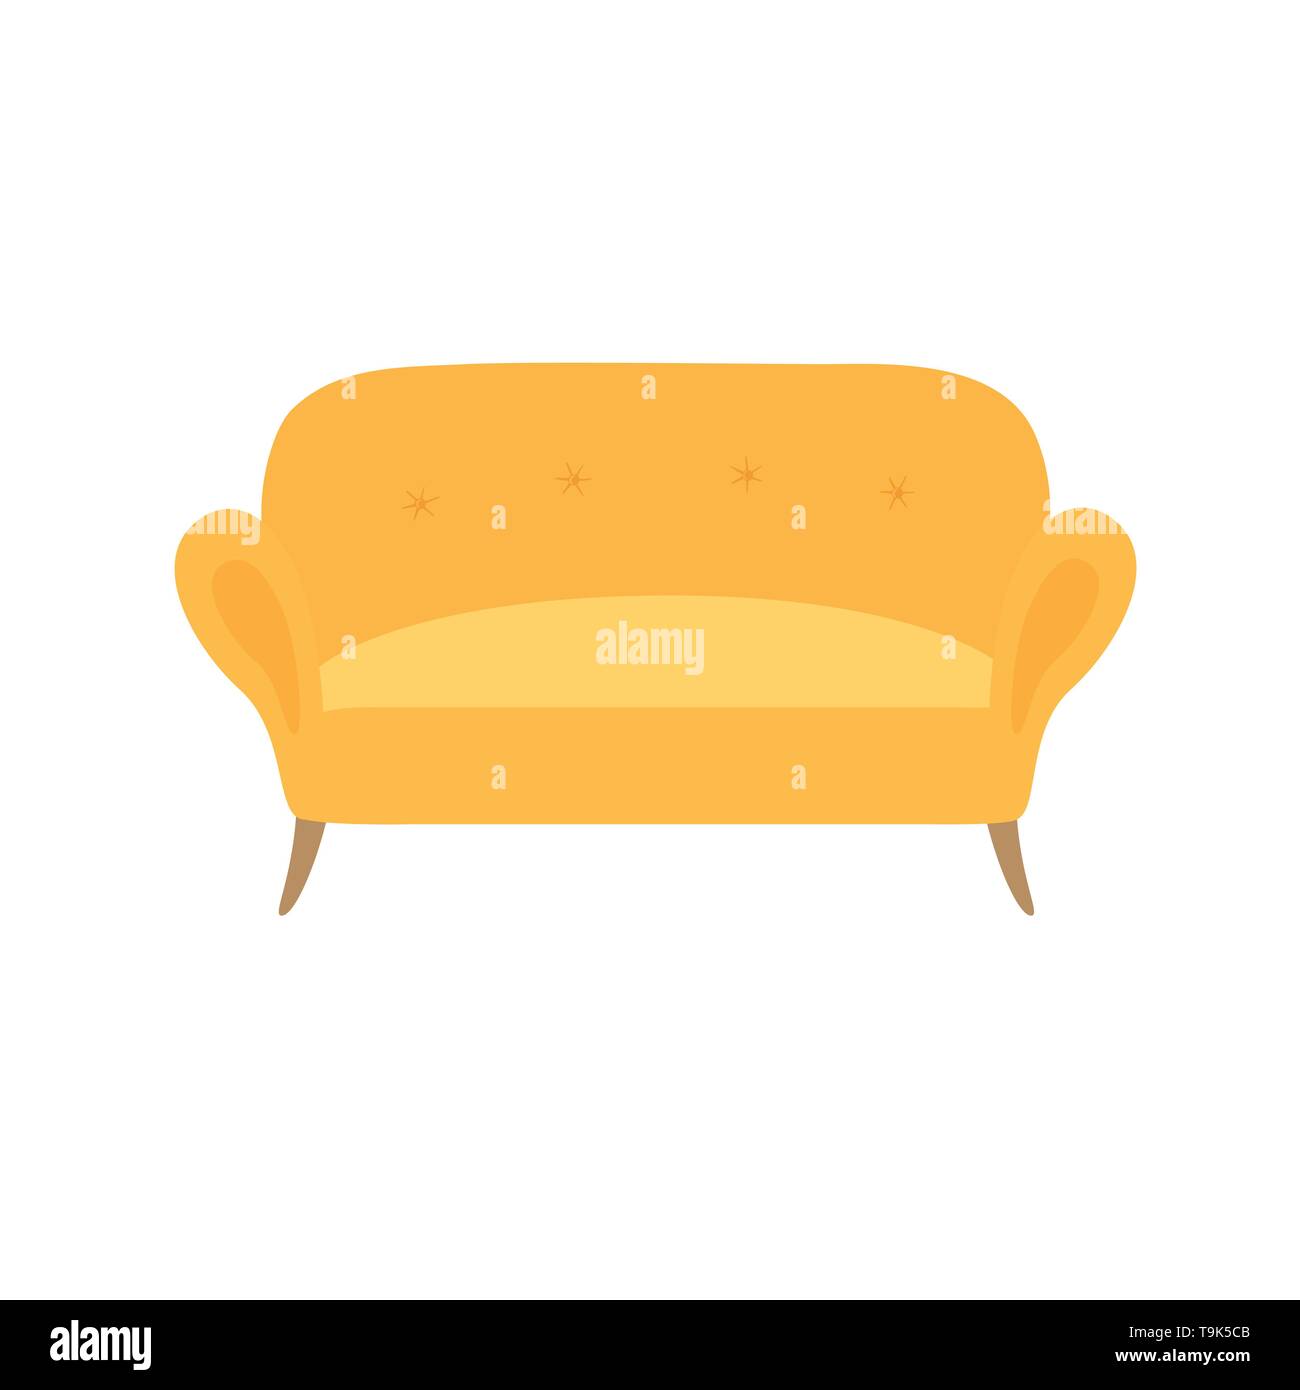 Sofa und Tisch gelb bunte Cartoon Illustration Vektor. Komfortable Lounge für Interior Design auf weißem Hintergrund. Stock Vektor